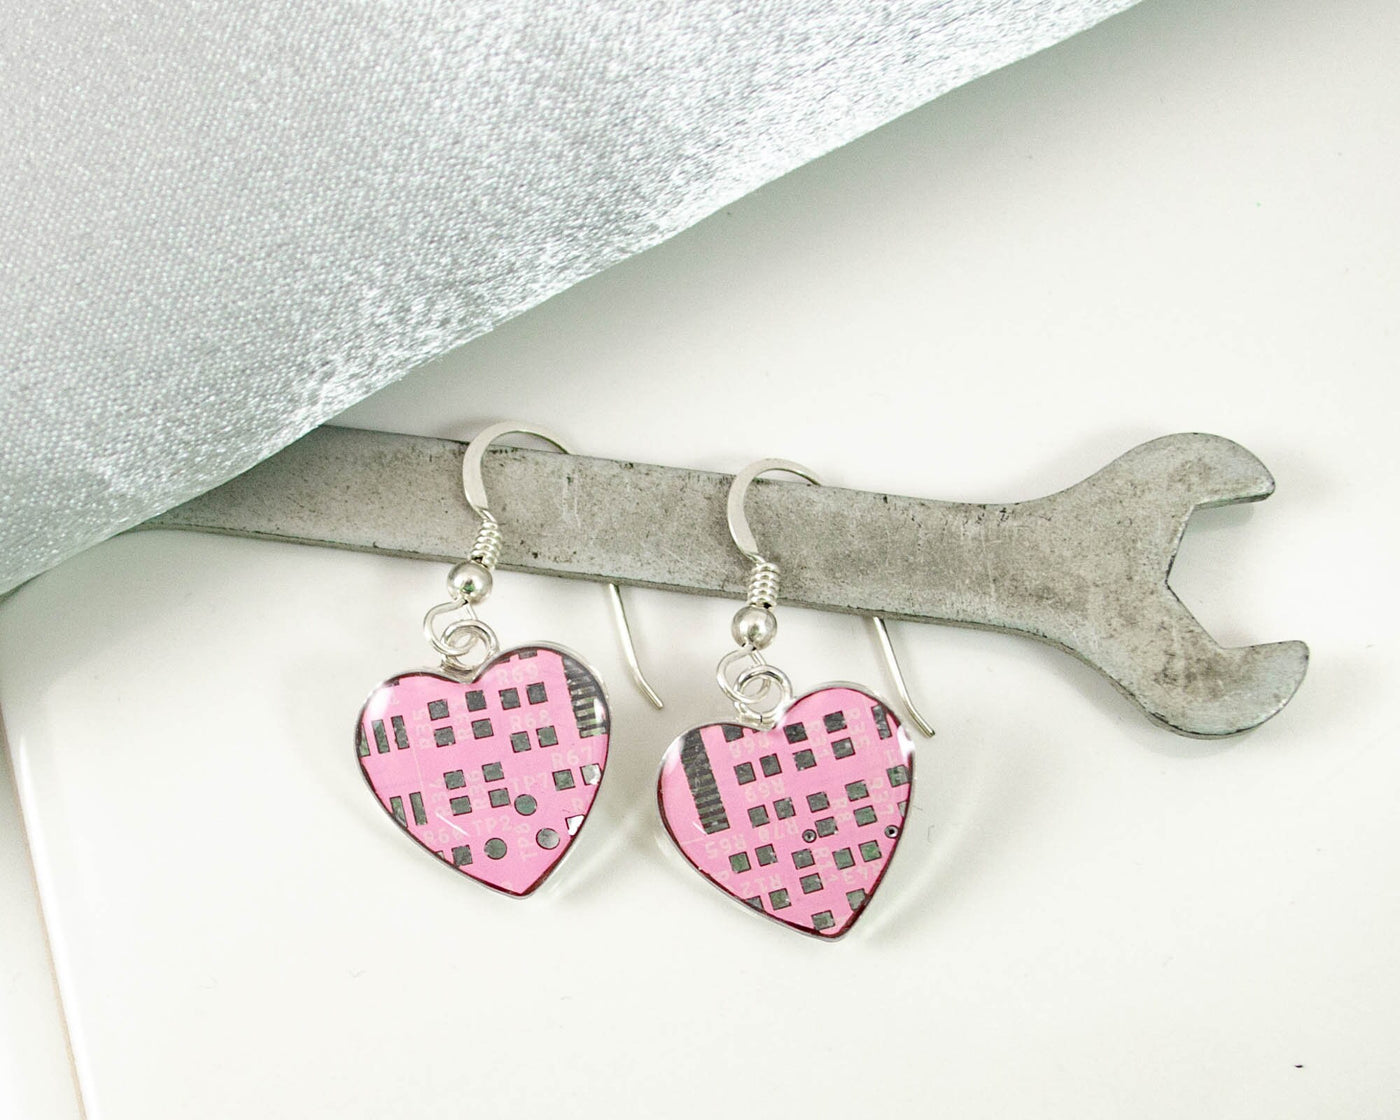 Pink Circuit Board Heart Earrings, Medium Size, Programmer Jewelry, Women in Computing Gift, Techie Earrings, Geek Chic Jewelry